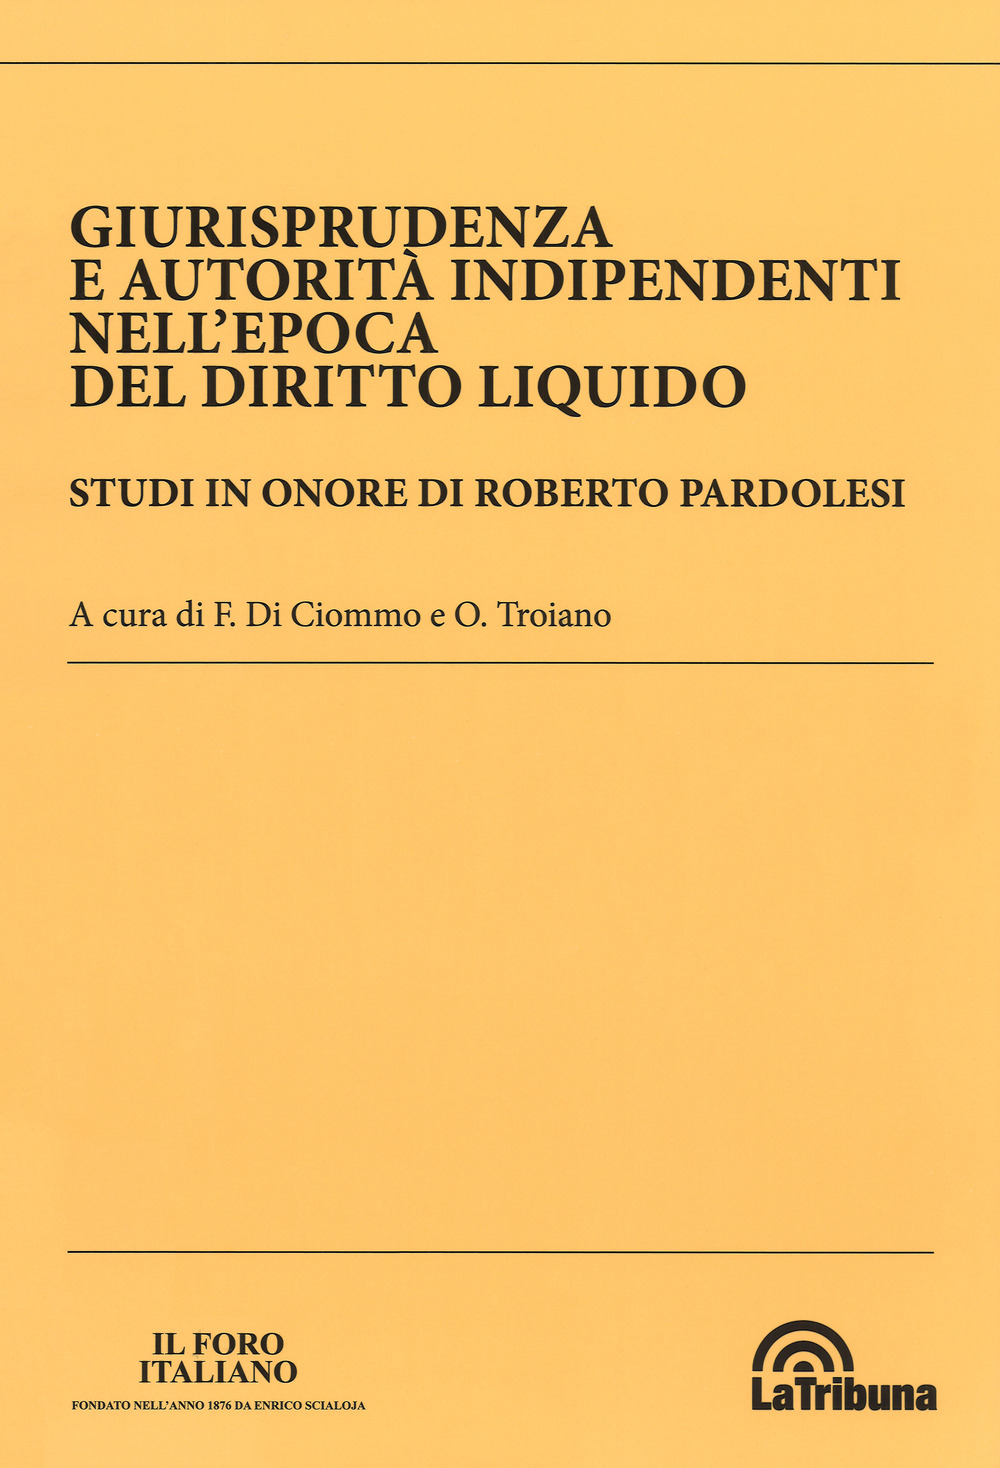 Giurisprudenza e autorità indipendenti nell'epoca del diritto liquido. Studi in onore di Roberto Pardolesi